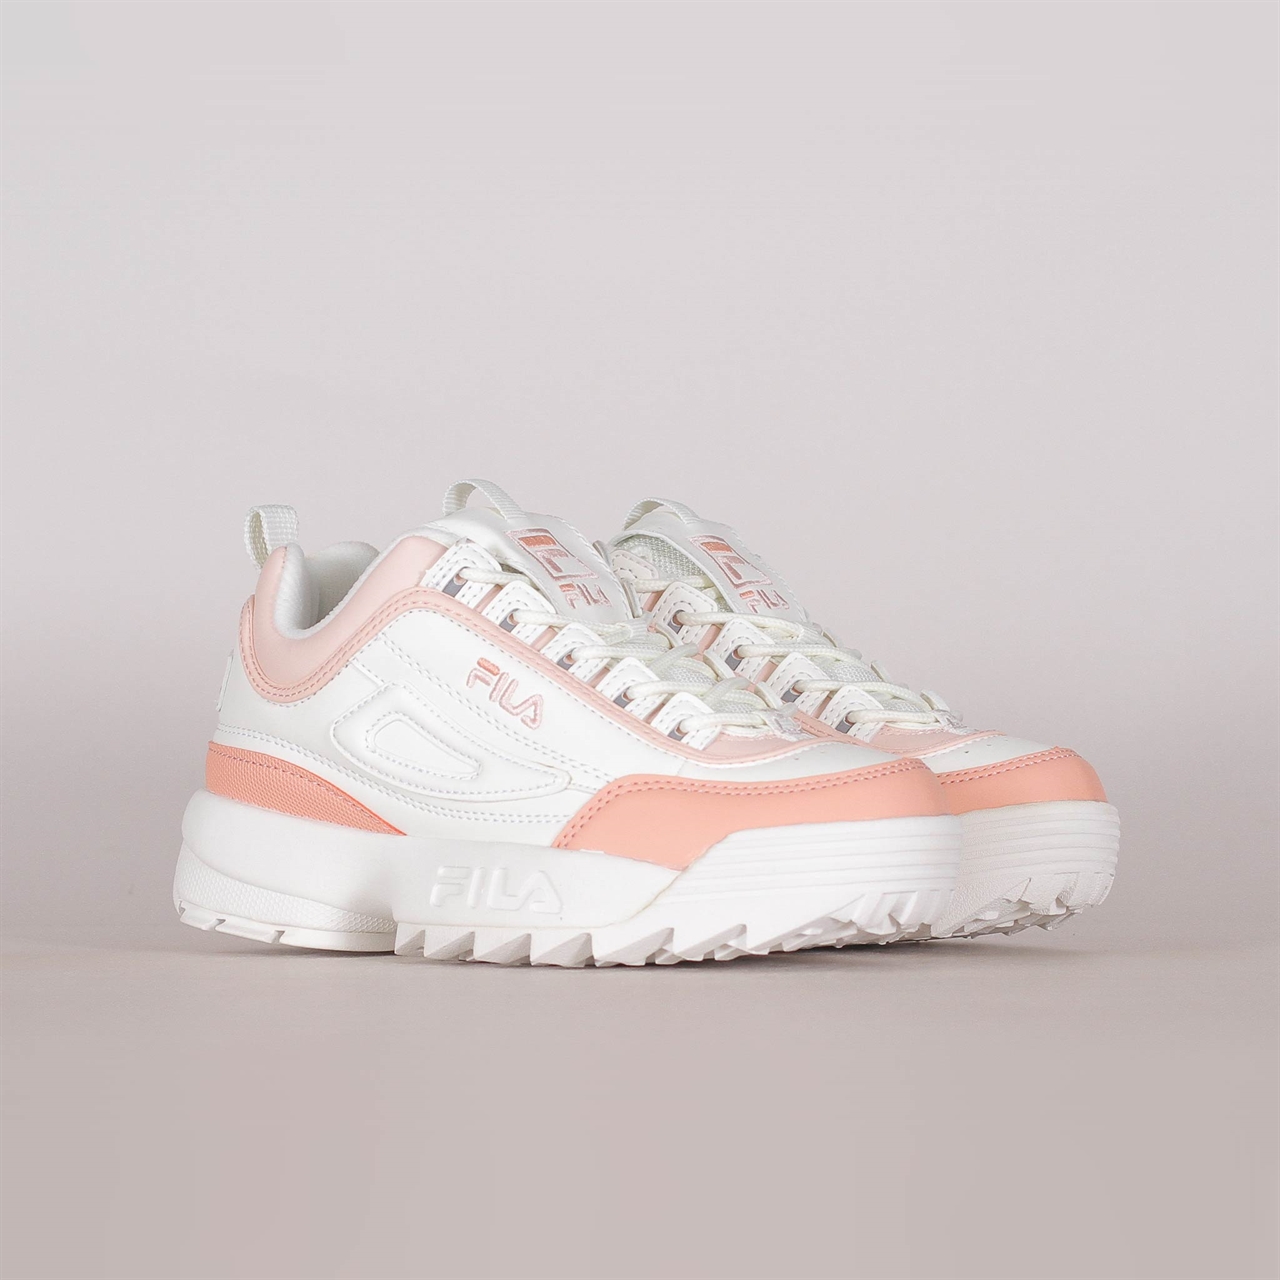 salmon pink white fila Sale Fila Shoes 